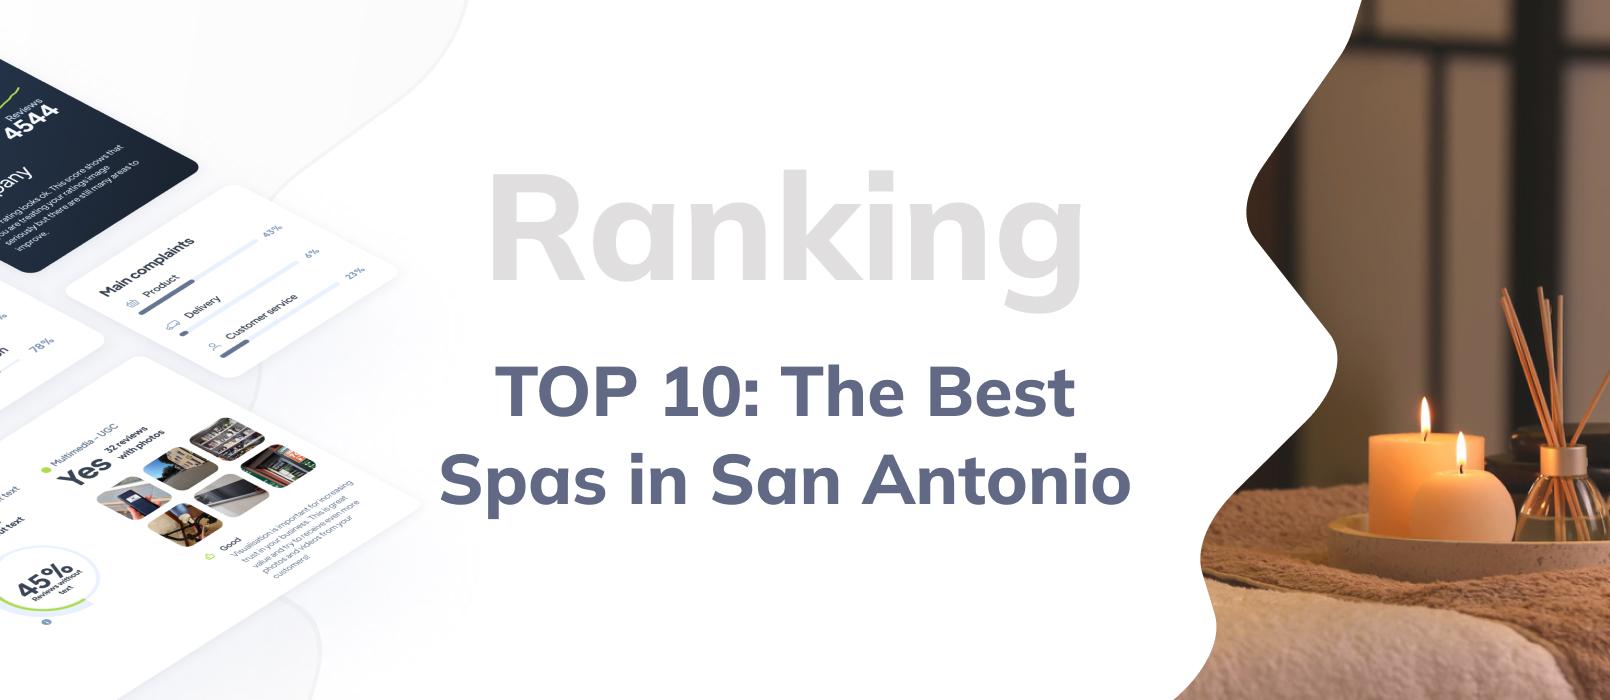 Spas in San Antonio - ranking TOP 10